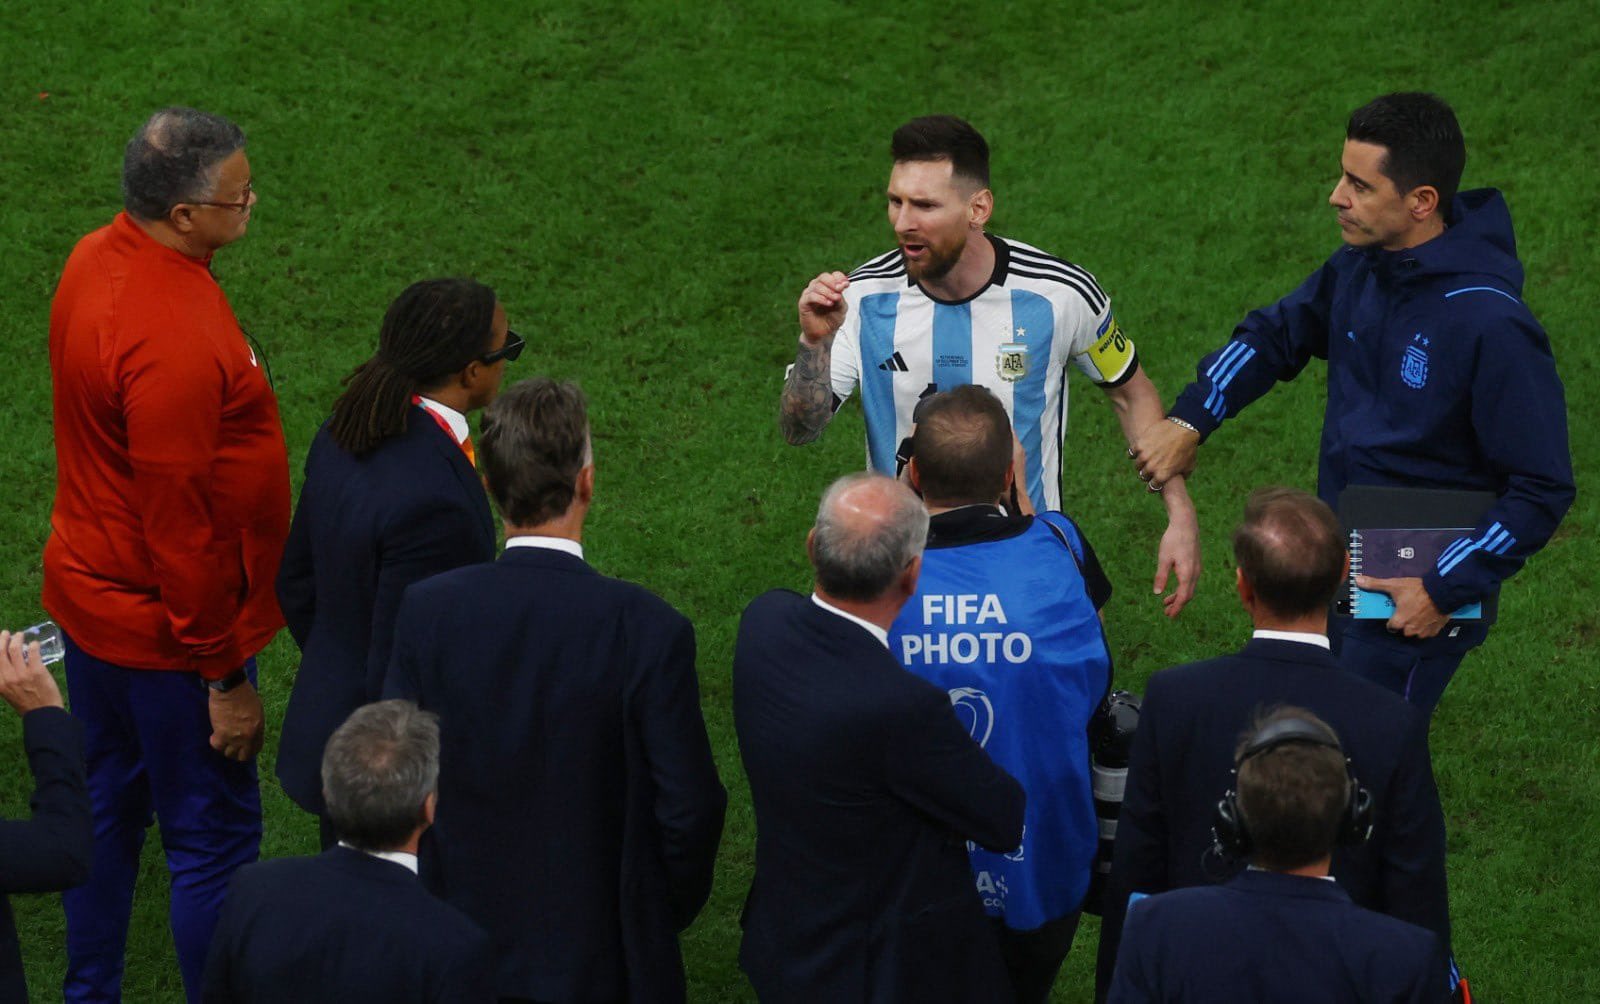 Messi: Đứng trên sân cỏ, người ta thường nhắc đến tên Messi như một biểu tượng của bóng đá thế giới với kỹ thuật điêu luyện và khả năng ghi bàn ngoạn mục. Hãy xem hình ảnh này để cảm nhận sức mạnh và tài năng của chàng trai trẻ này.